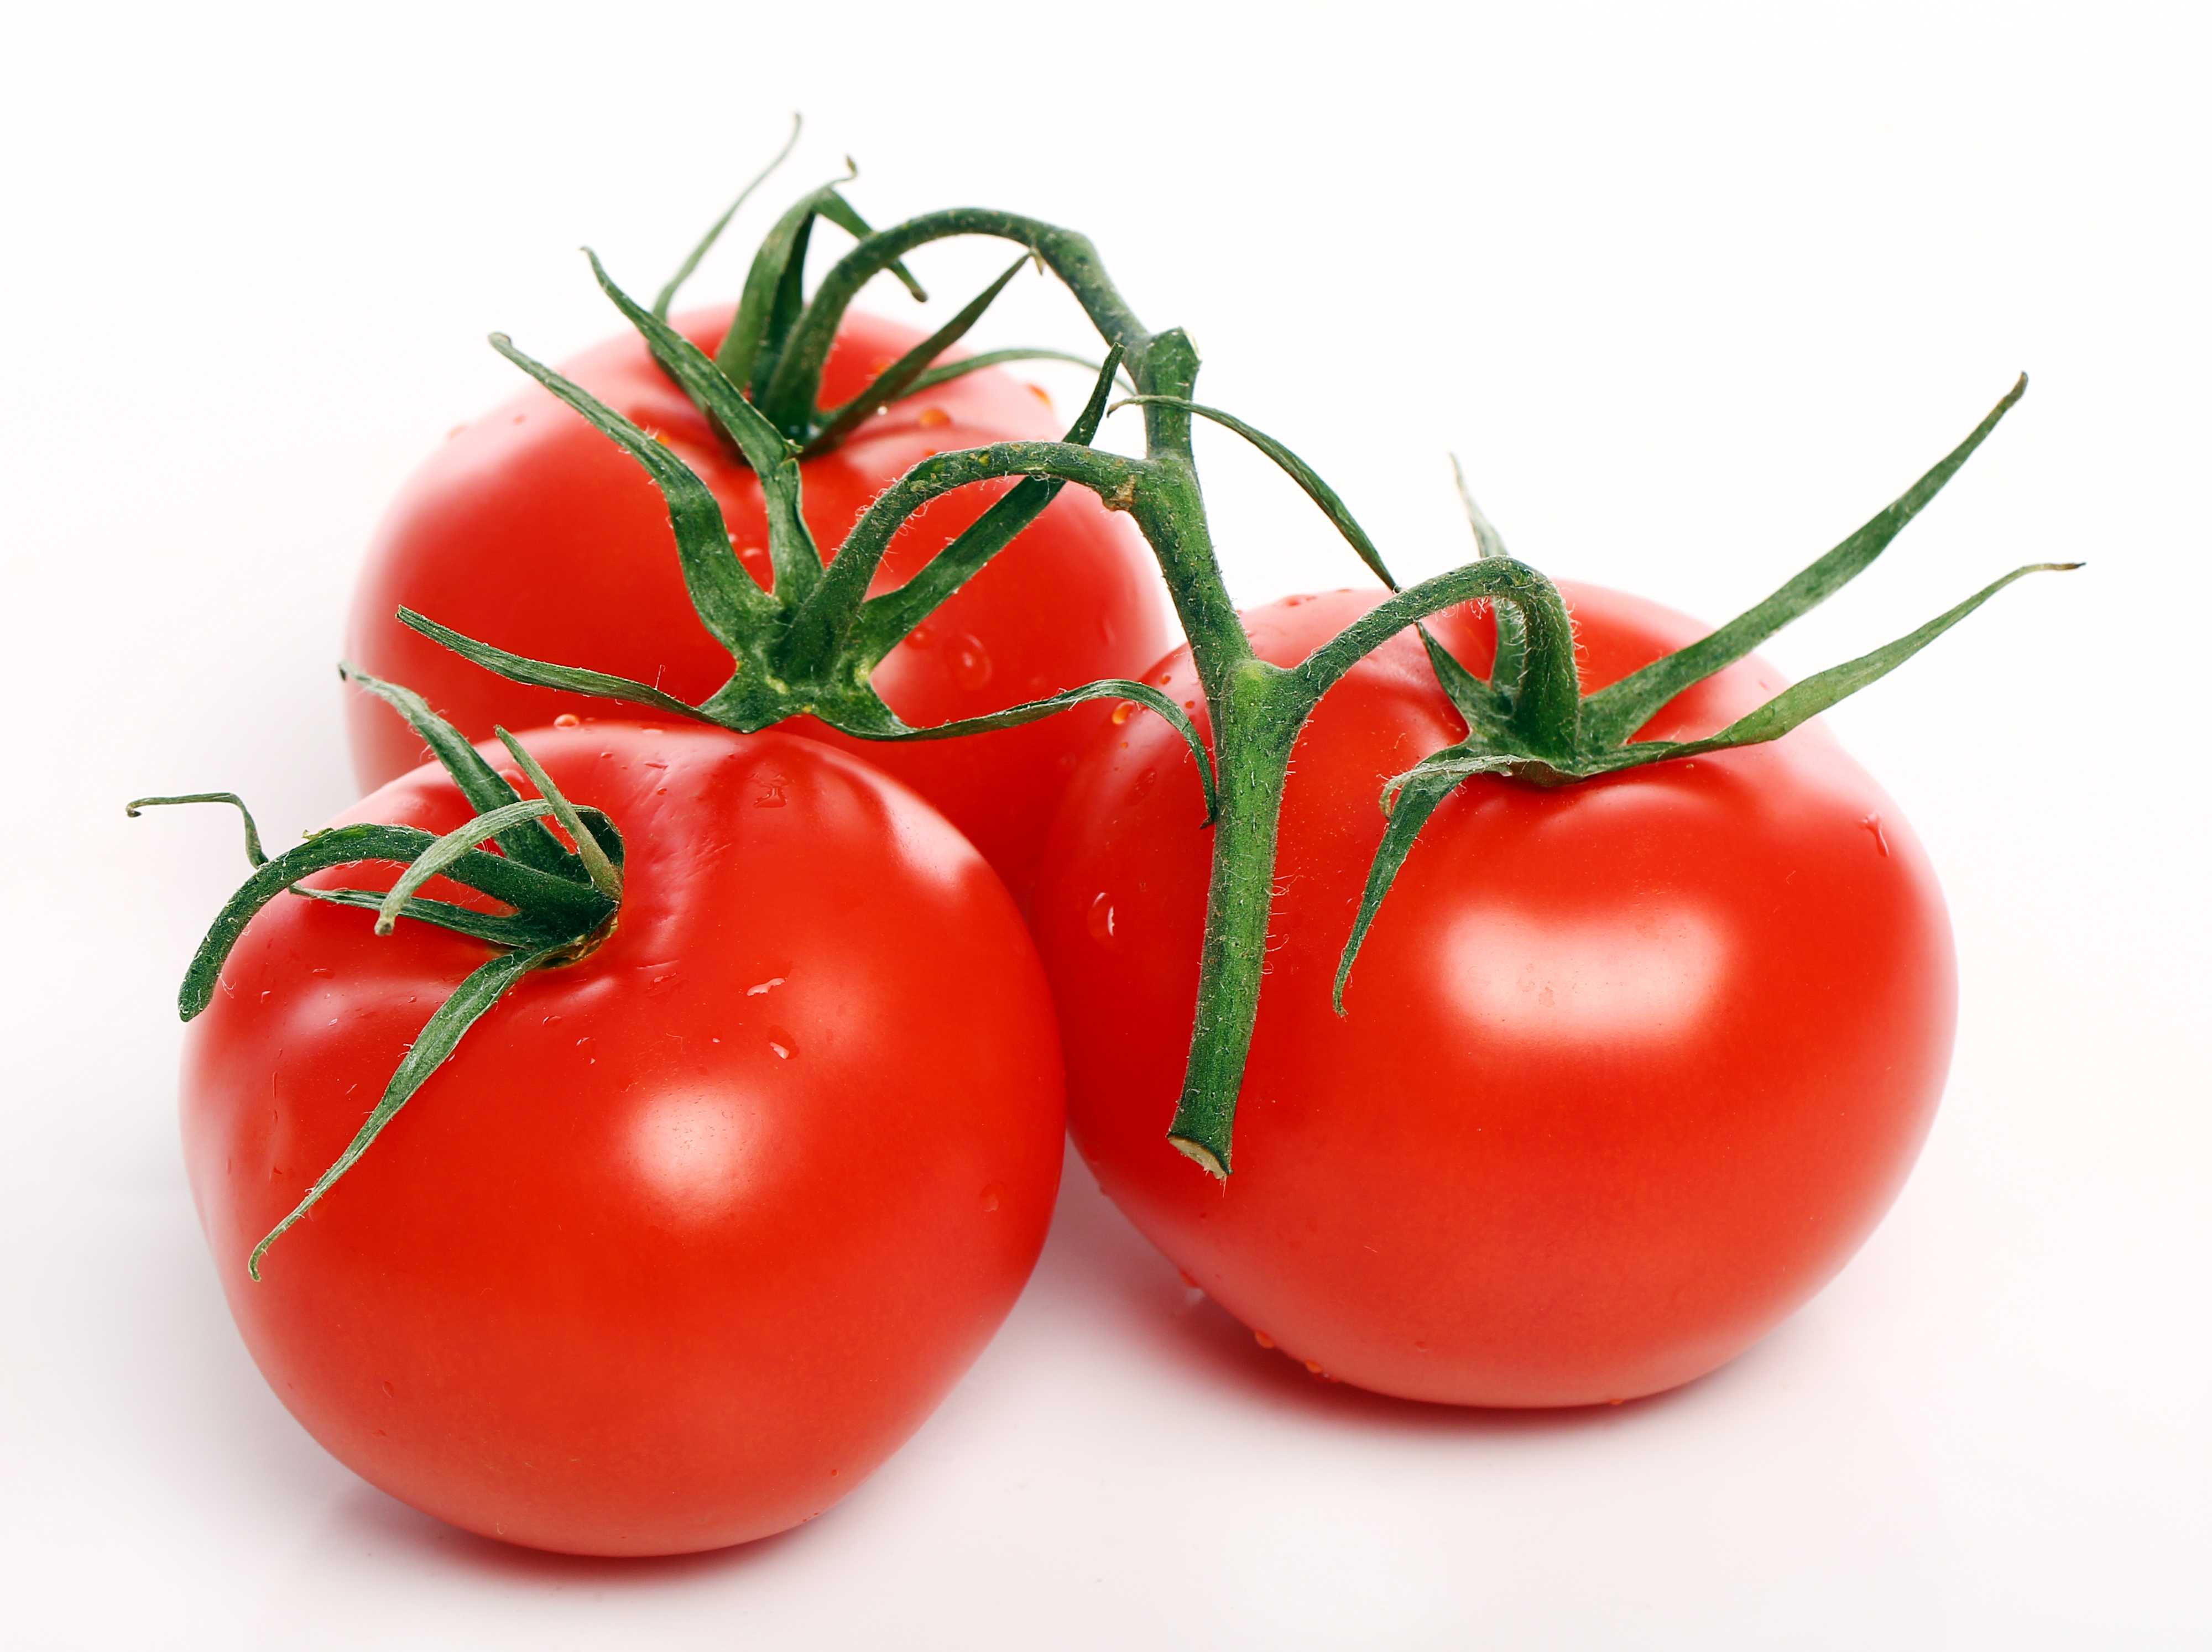 Пикировка томатов — когда рассаживать помидоры и как это правильно делать